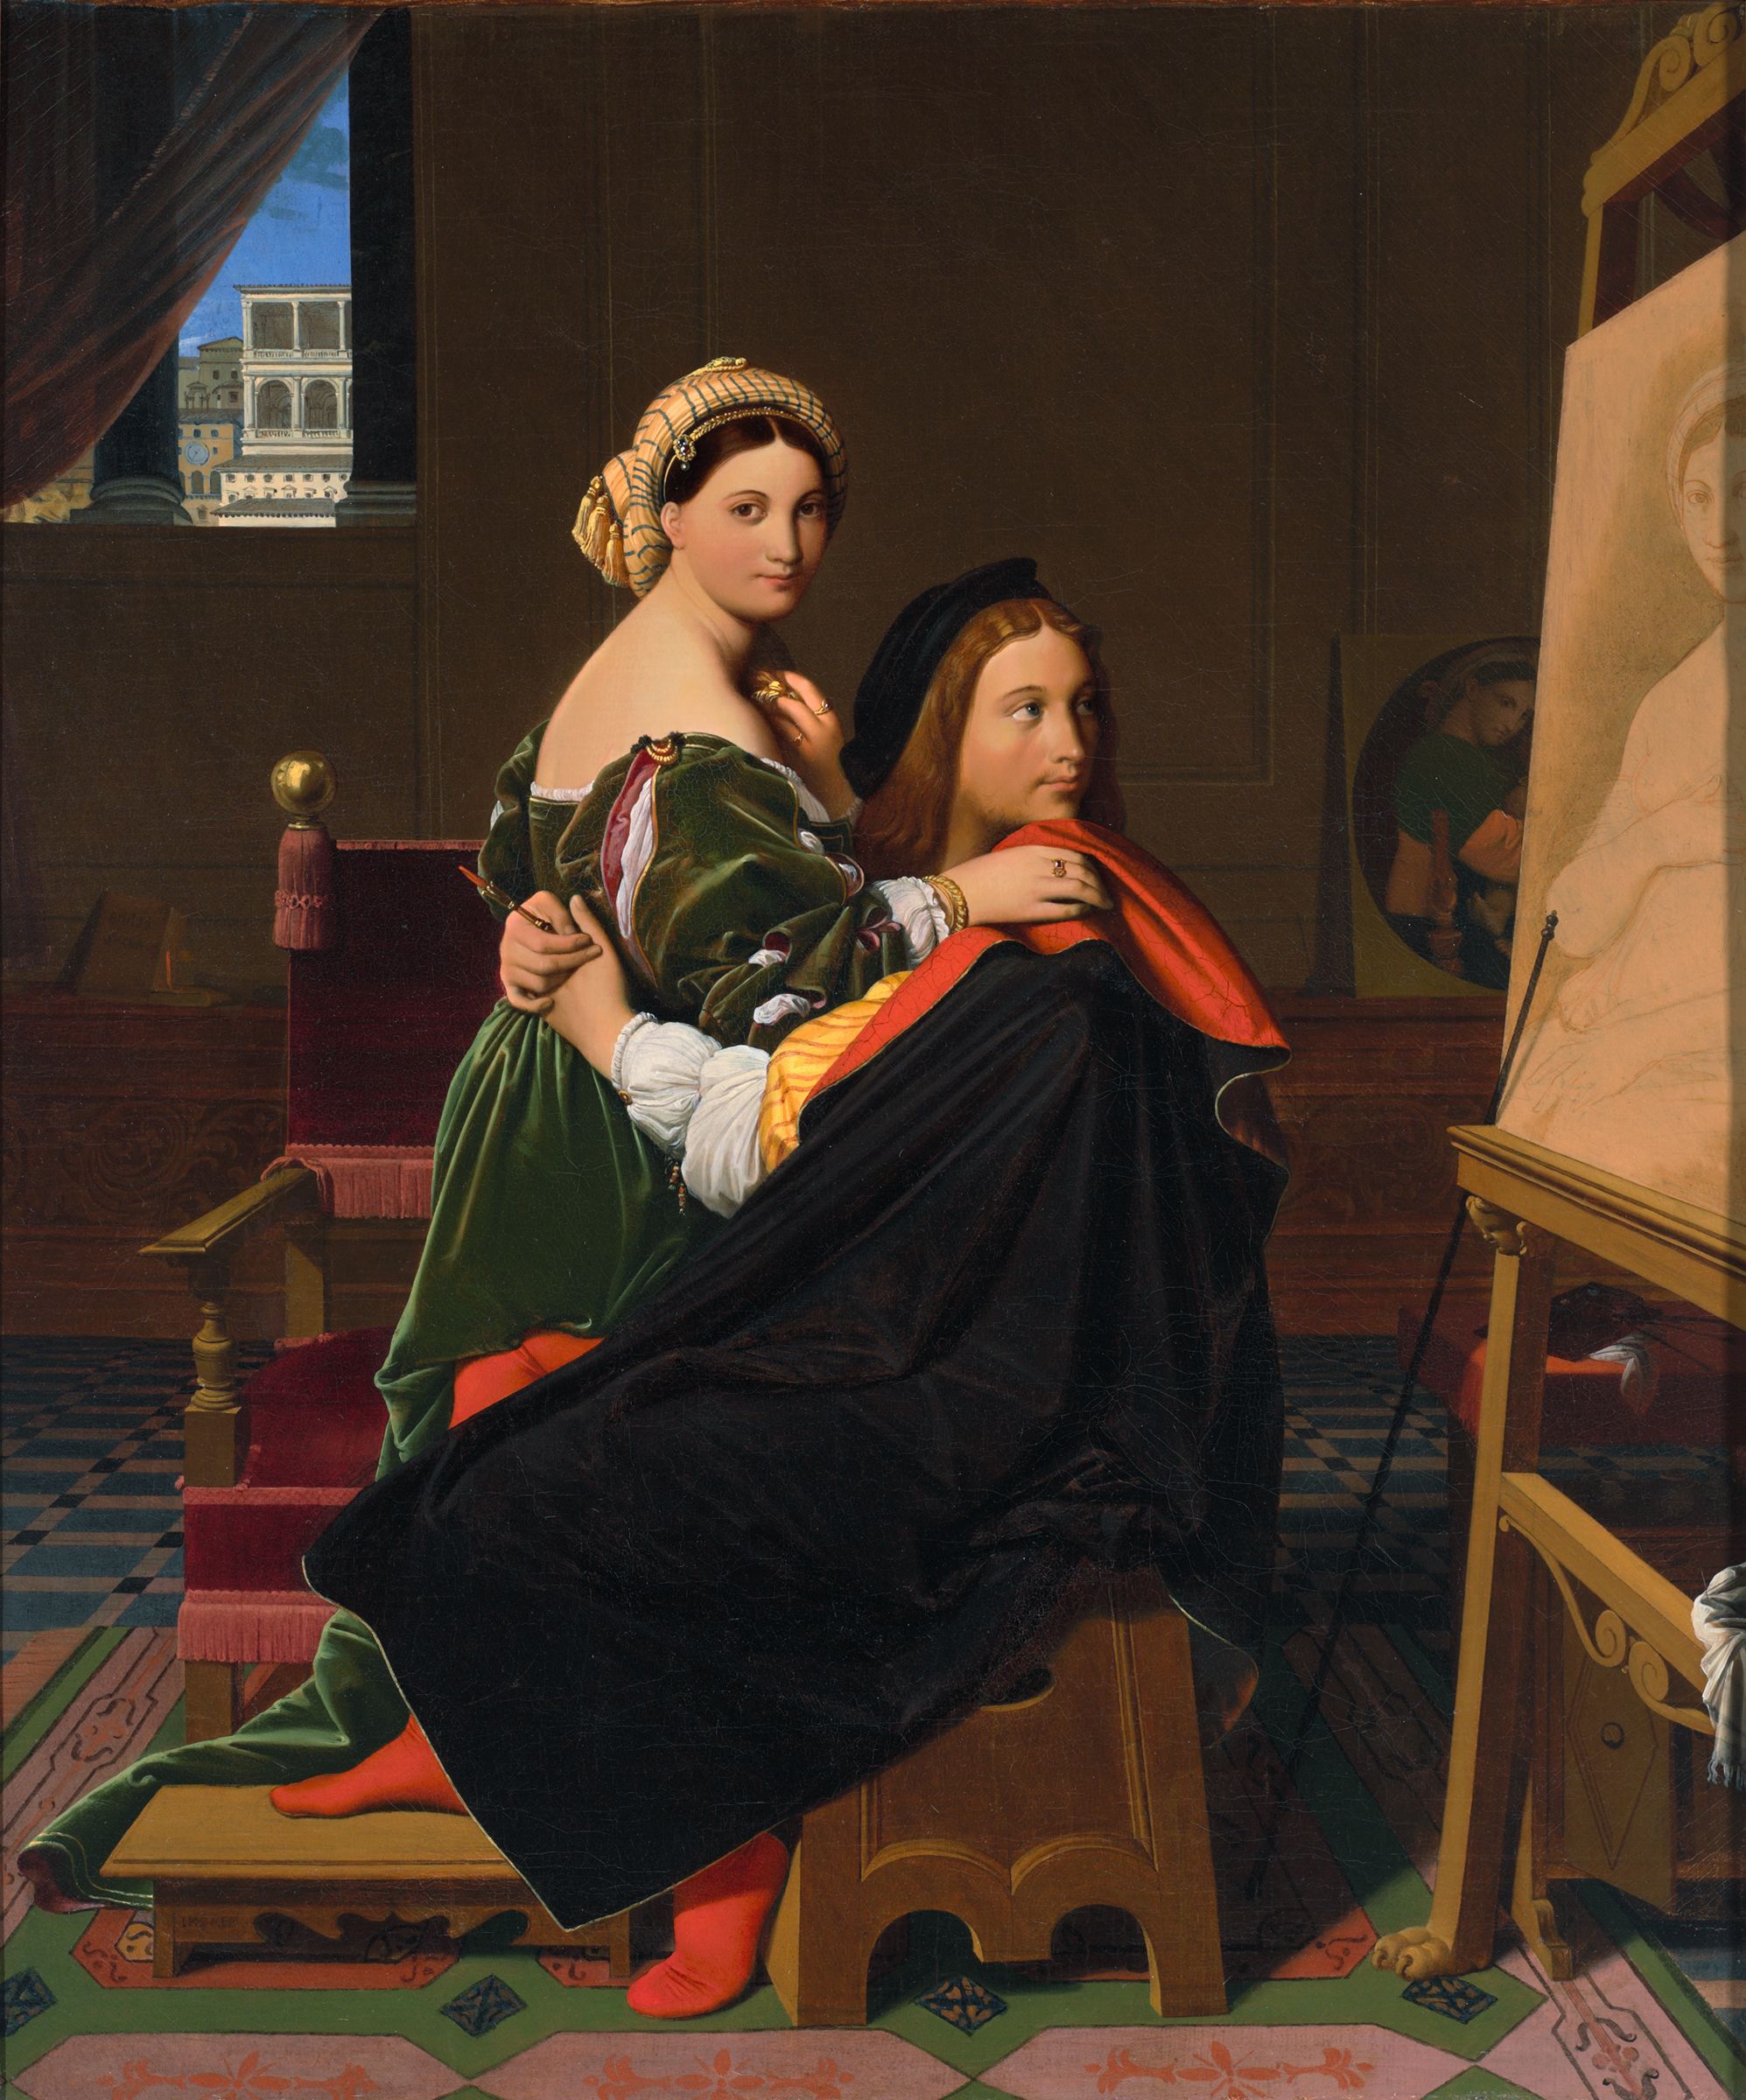 Ingres y Rafael, retrato de una obsesión